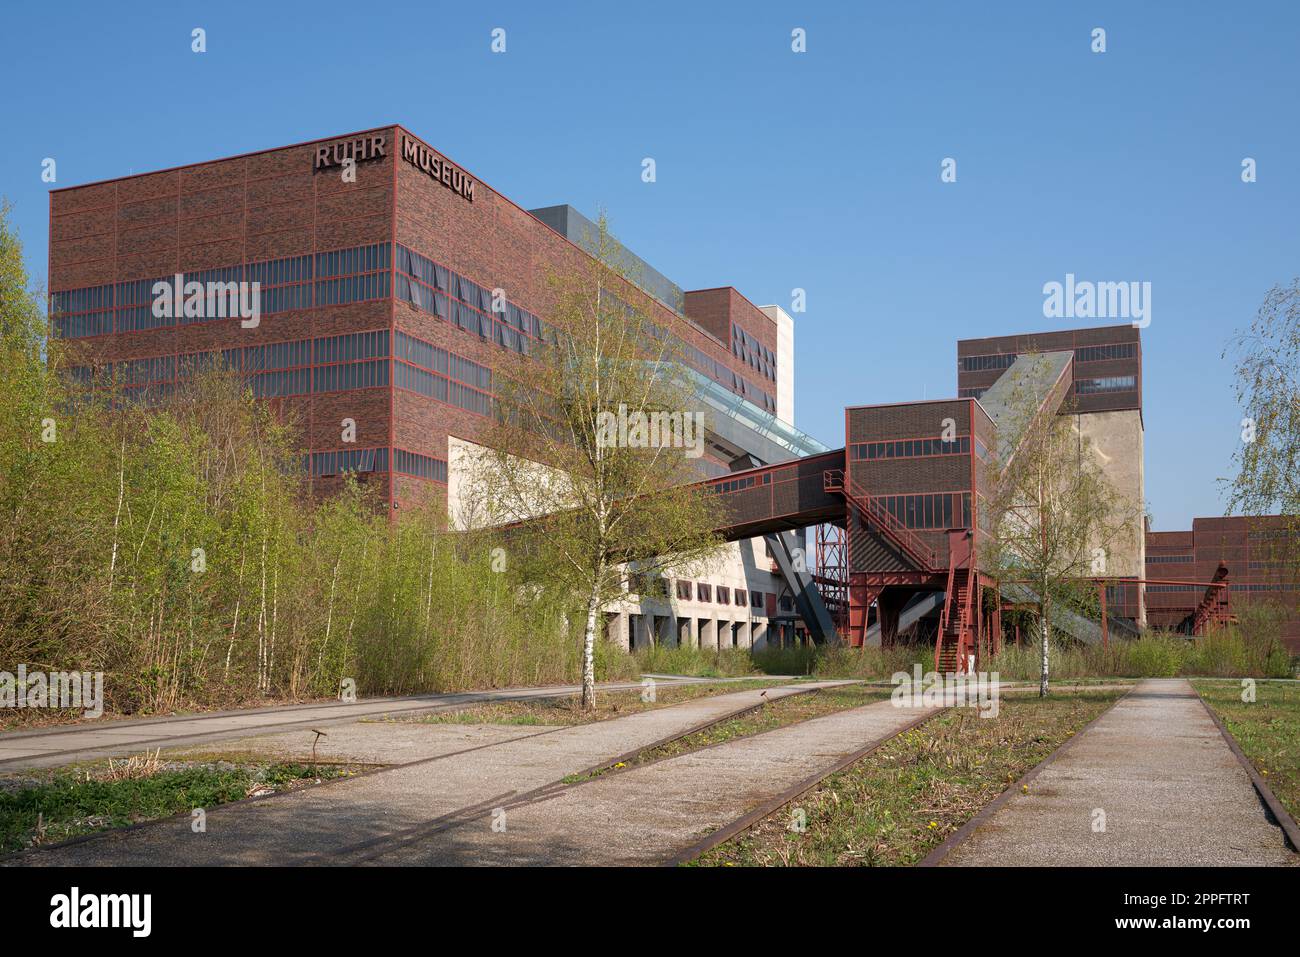 Ruhr Museum, Zeche Zollverein, Essen, Germany Stock Photo